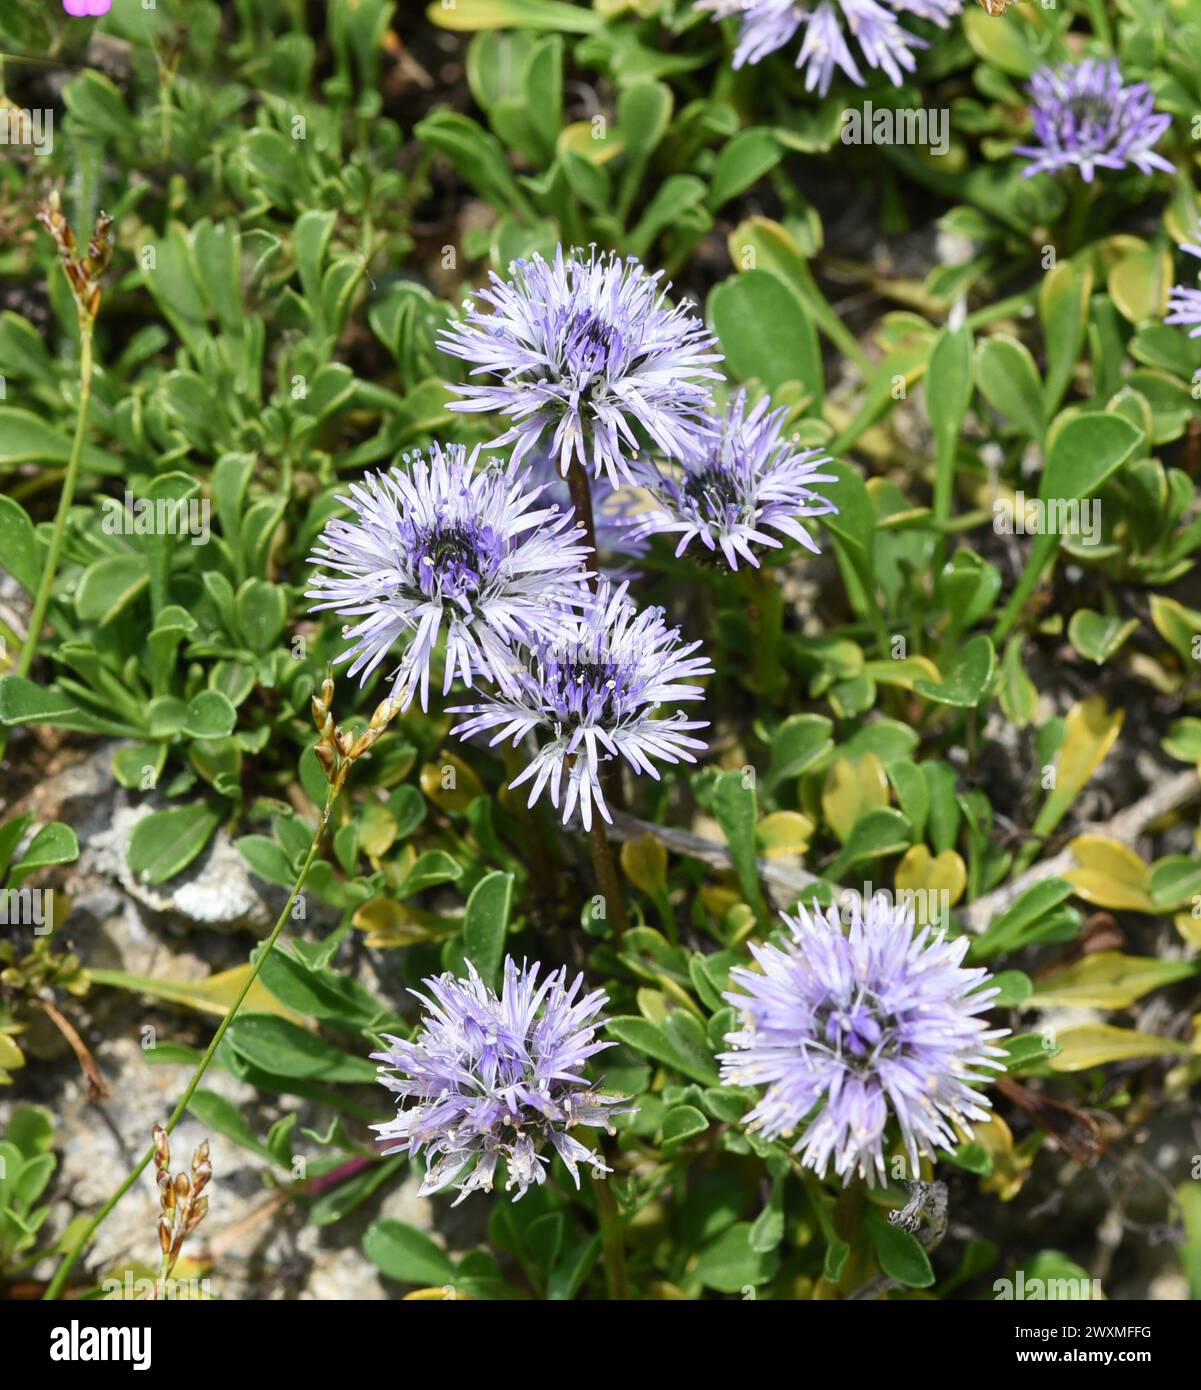 Kugelblume, Globularia meridionalis ist eine sehr reichbluetige und robuste Kugelblume, die auch in Gaerten bestens gedeiht. Fiore del globo, Globularia Foto Stock